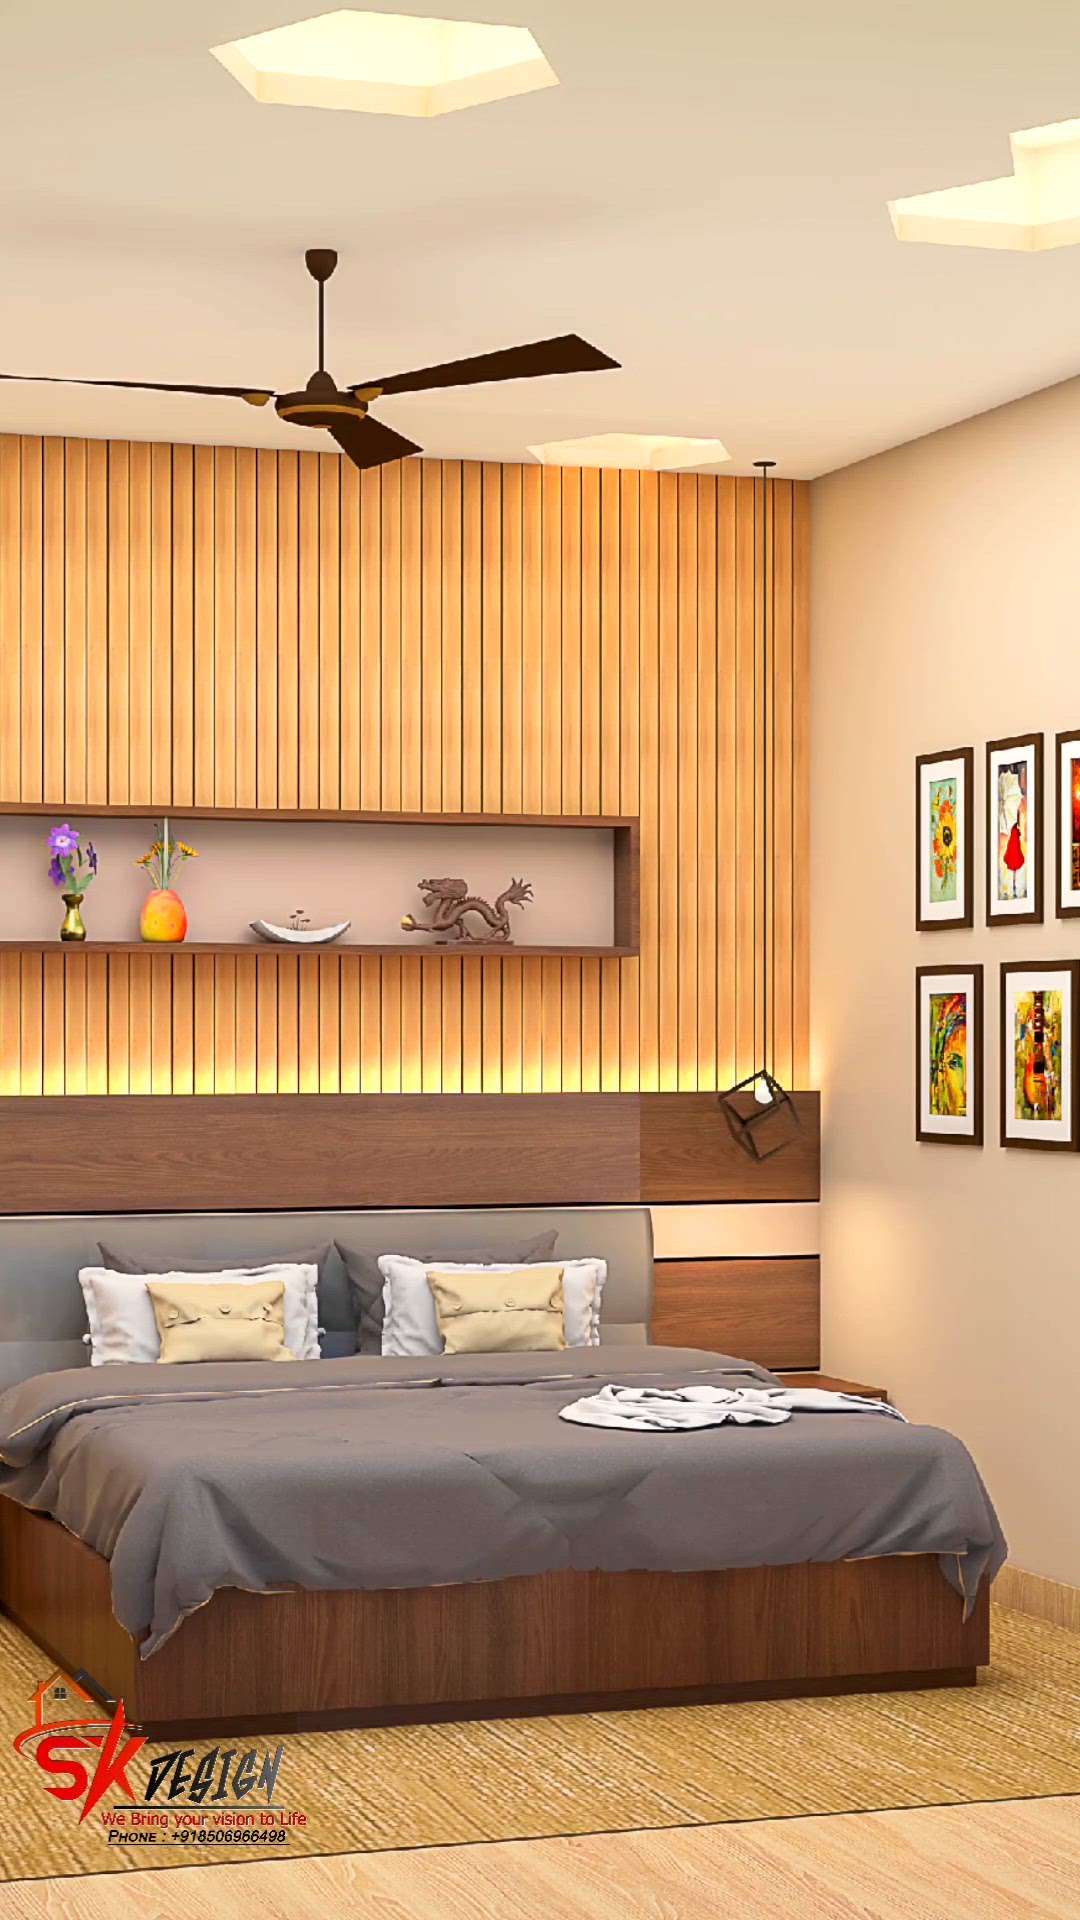 modern bedroom design 😍
#InteriorDesigner #Architectural&Interior #BedroomDecor #MasterBedroom #BedroomDesigns #BedroomIdeas #WoodenBeds #LUXURY_BED #bedroomdesign  #interiror #Architect #architecturedesigns #HouseConstruction #HouseDesigns #skdesign666